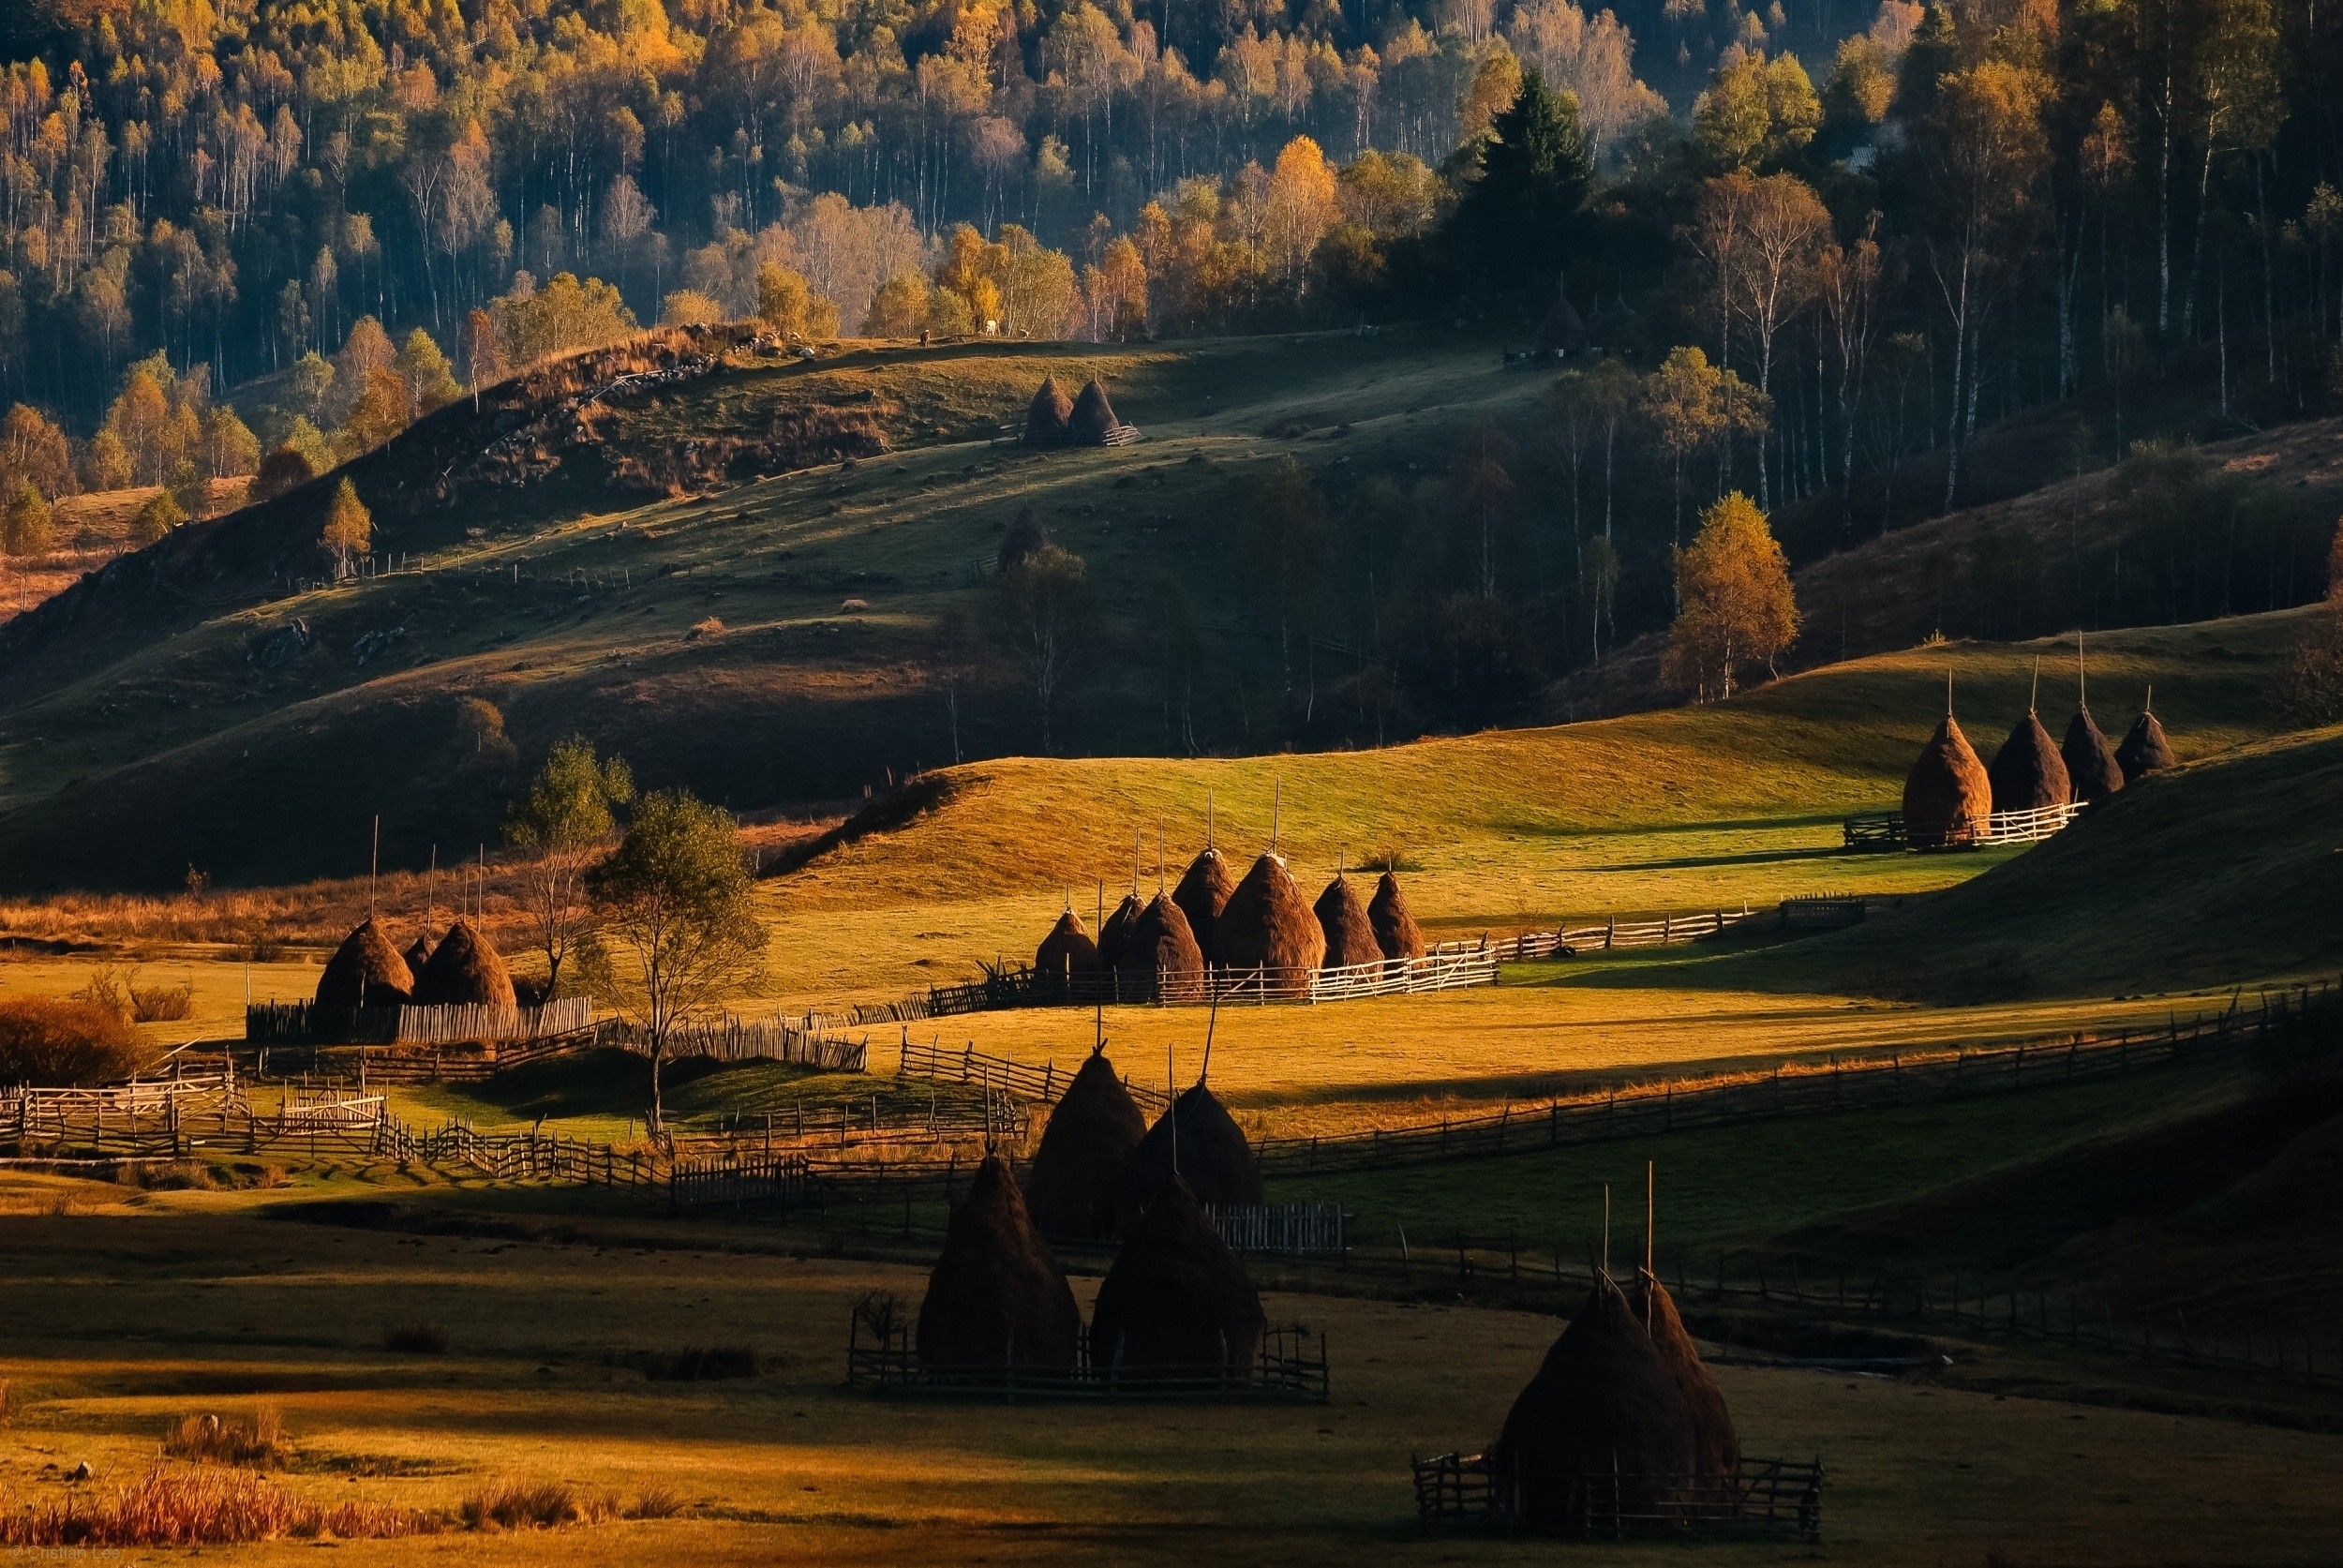 Обои Румыния сельское хозяйство сельская местность на рабочий стол